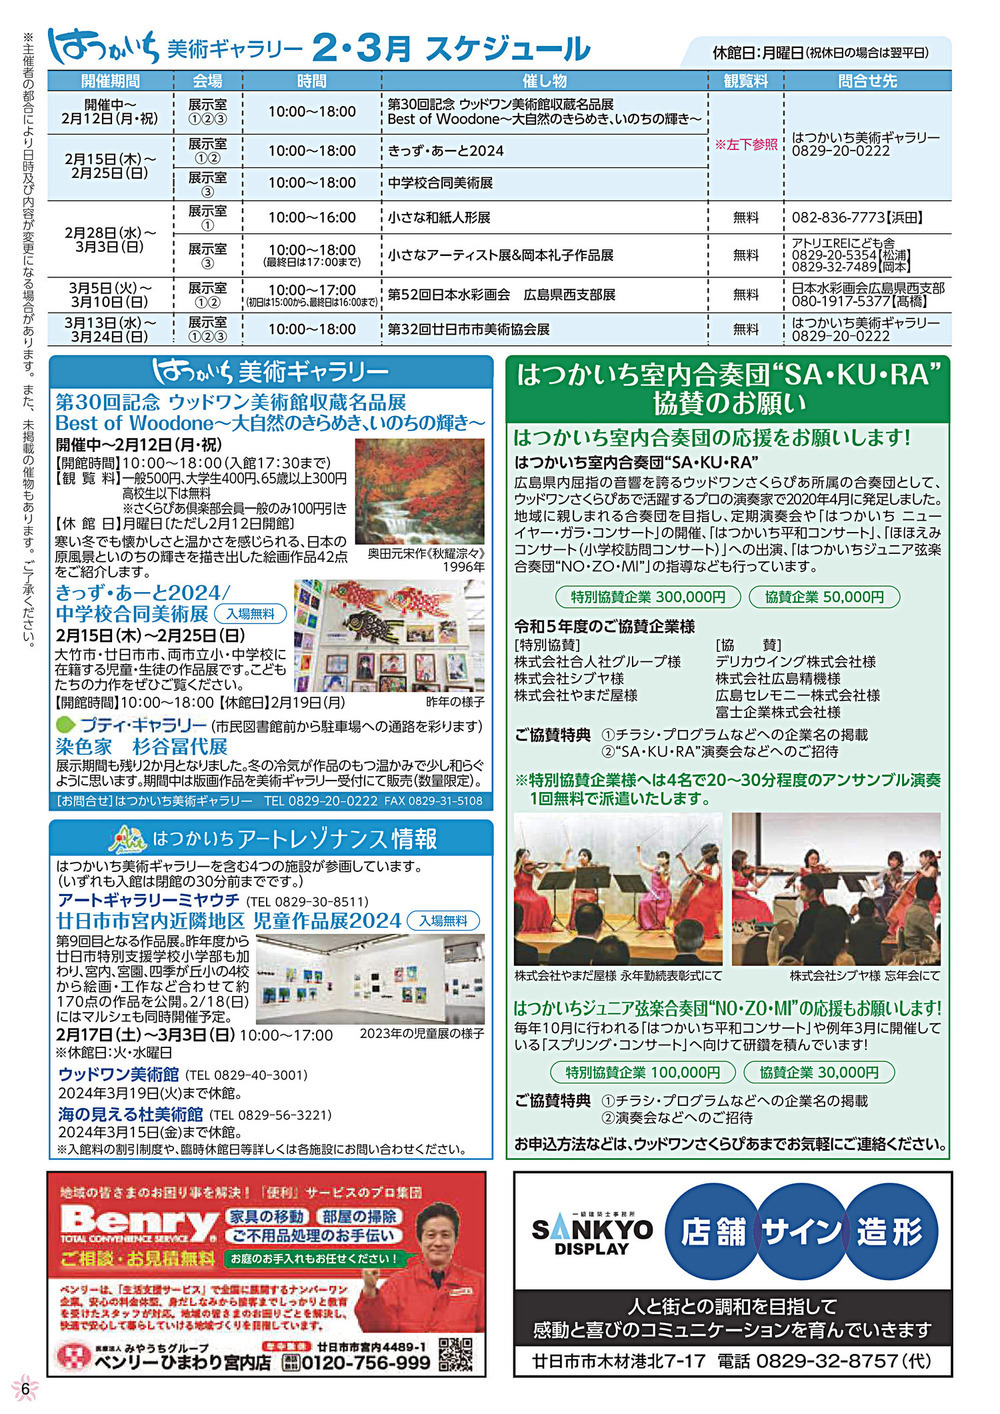 Agenda da Galeria de Arte Hatsukaichi de setembro a outubro